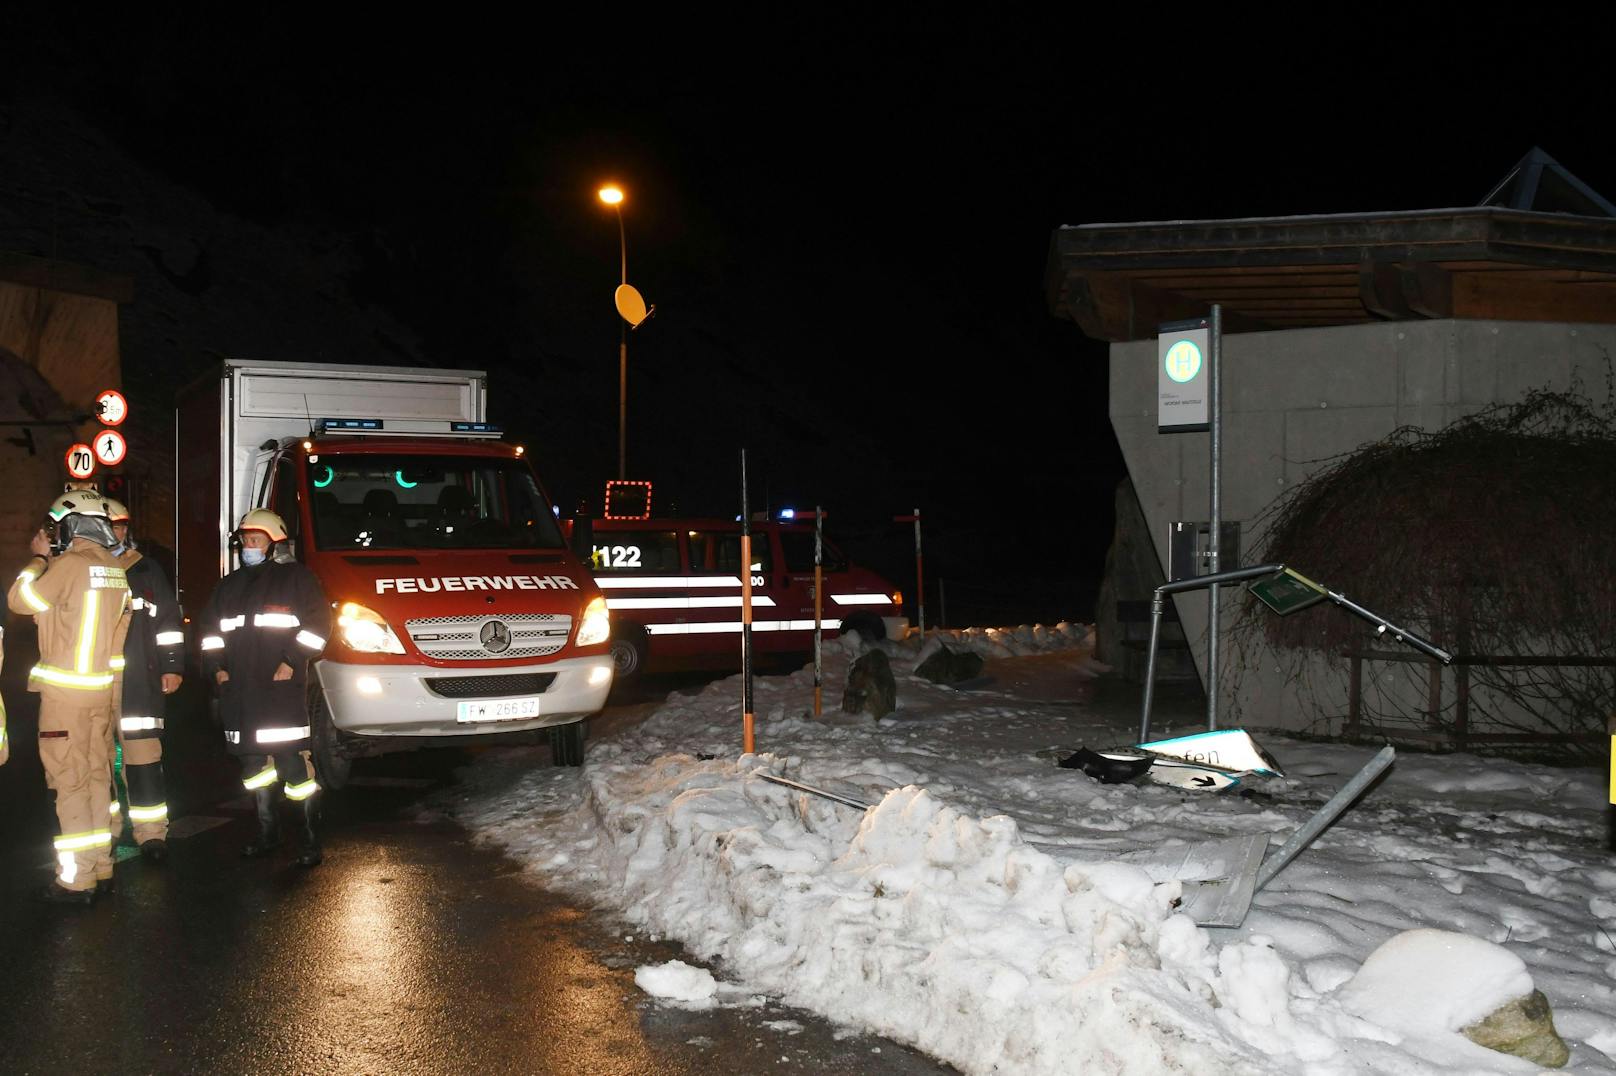 Spektakulärer Crash am Sonntagabend in Tirol: Ein Lenker verlor die Kontrolle über seinen BMW, kam von der Straße ab und durchbrach mehrere Bäume und Verkehrsschilder. Beide Insassen wurden schwer verletzt. 